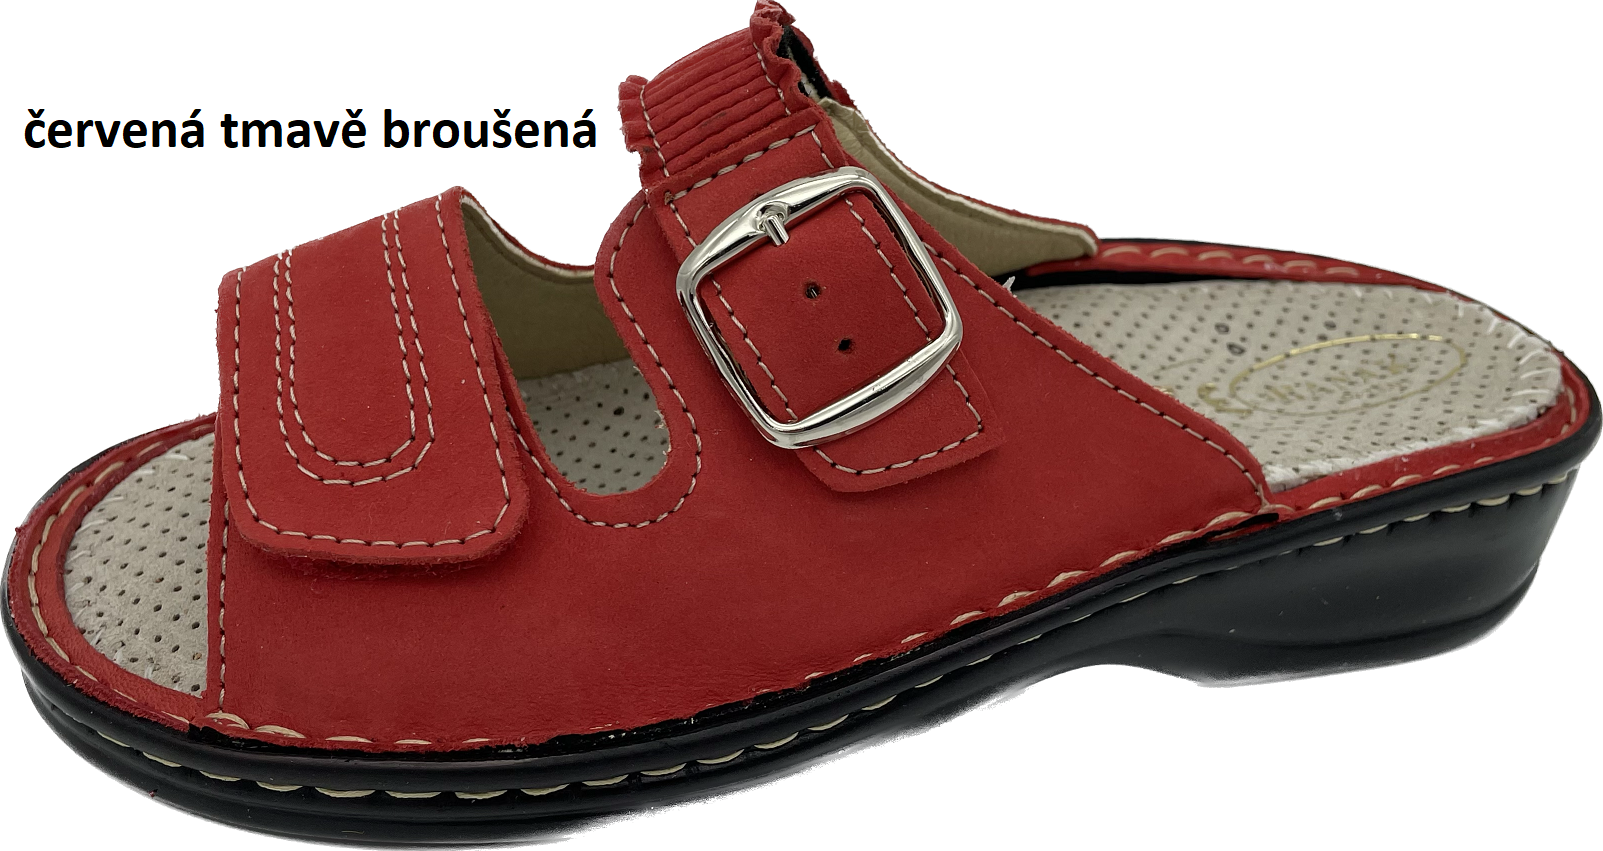 Boty Hanák vzor 305 - černá podešev Barva usně: červená tmavě broušená, Velikosti obuvi: 36